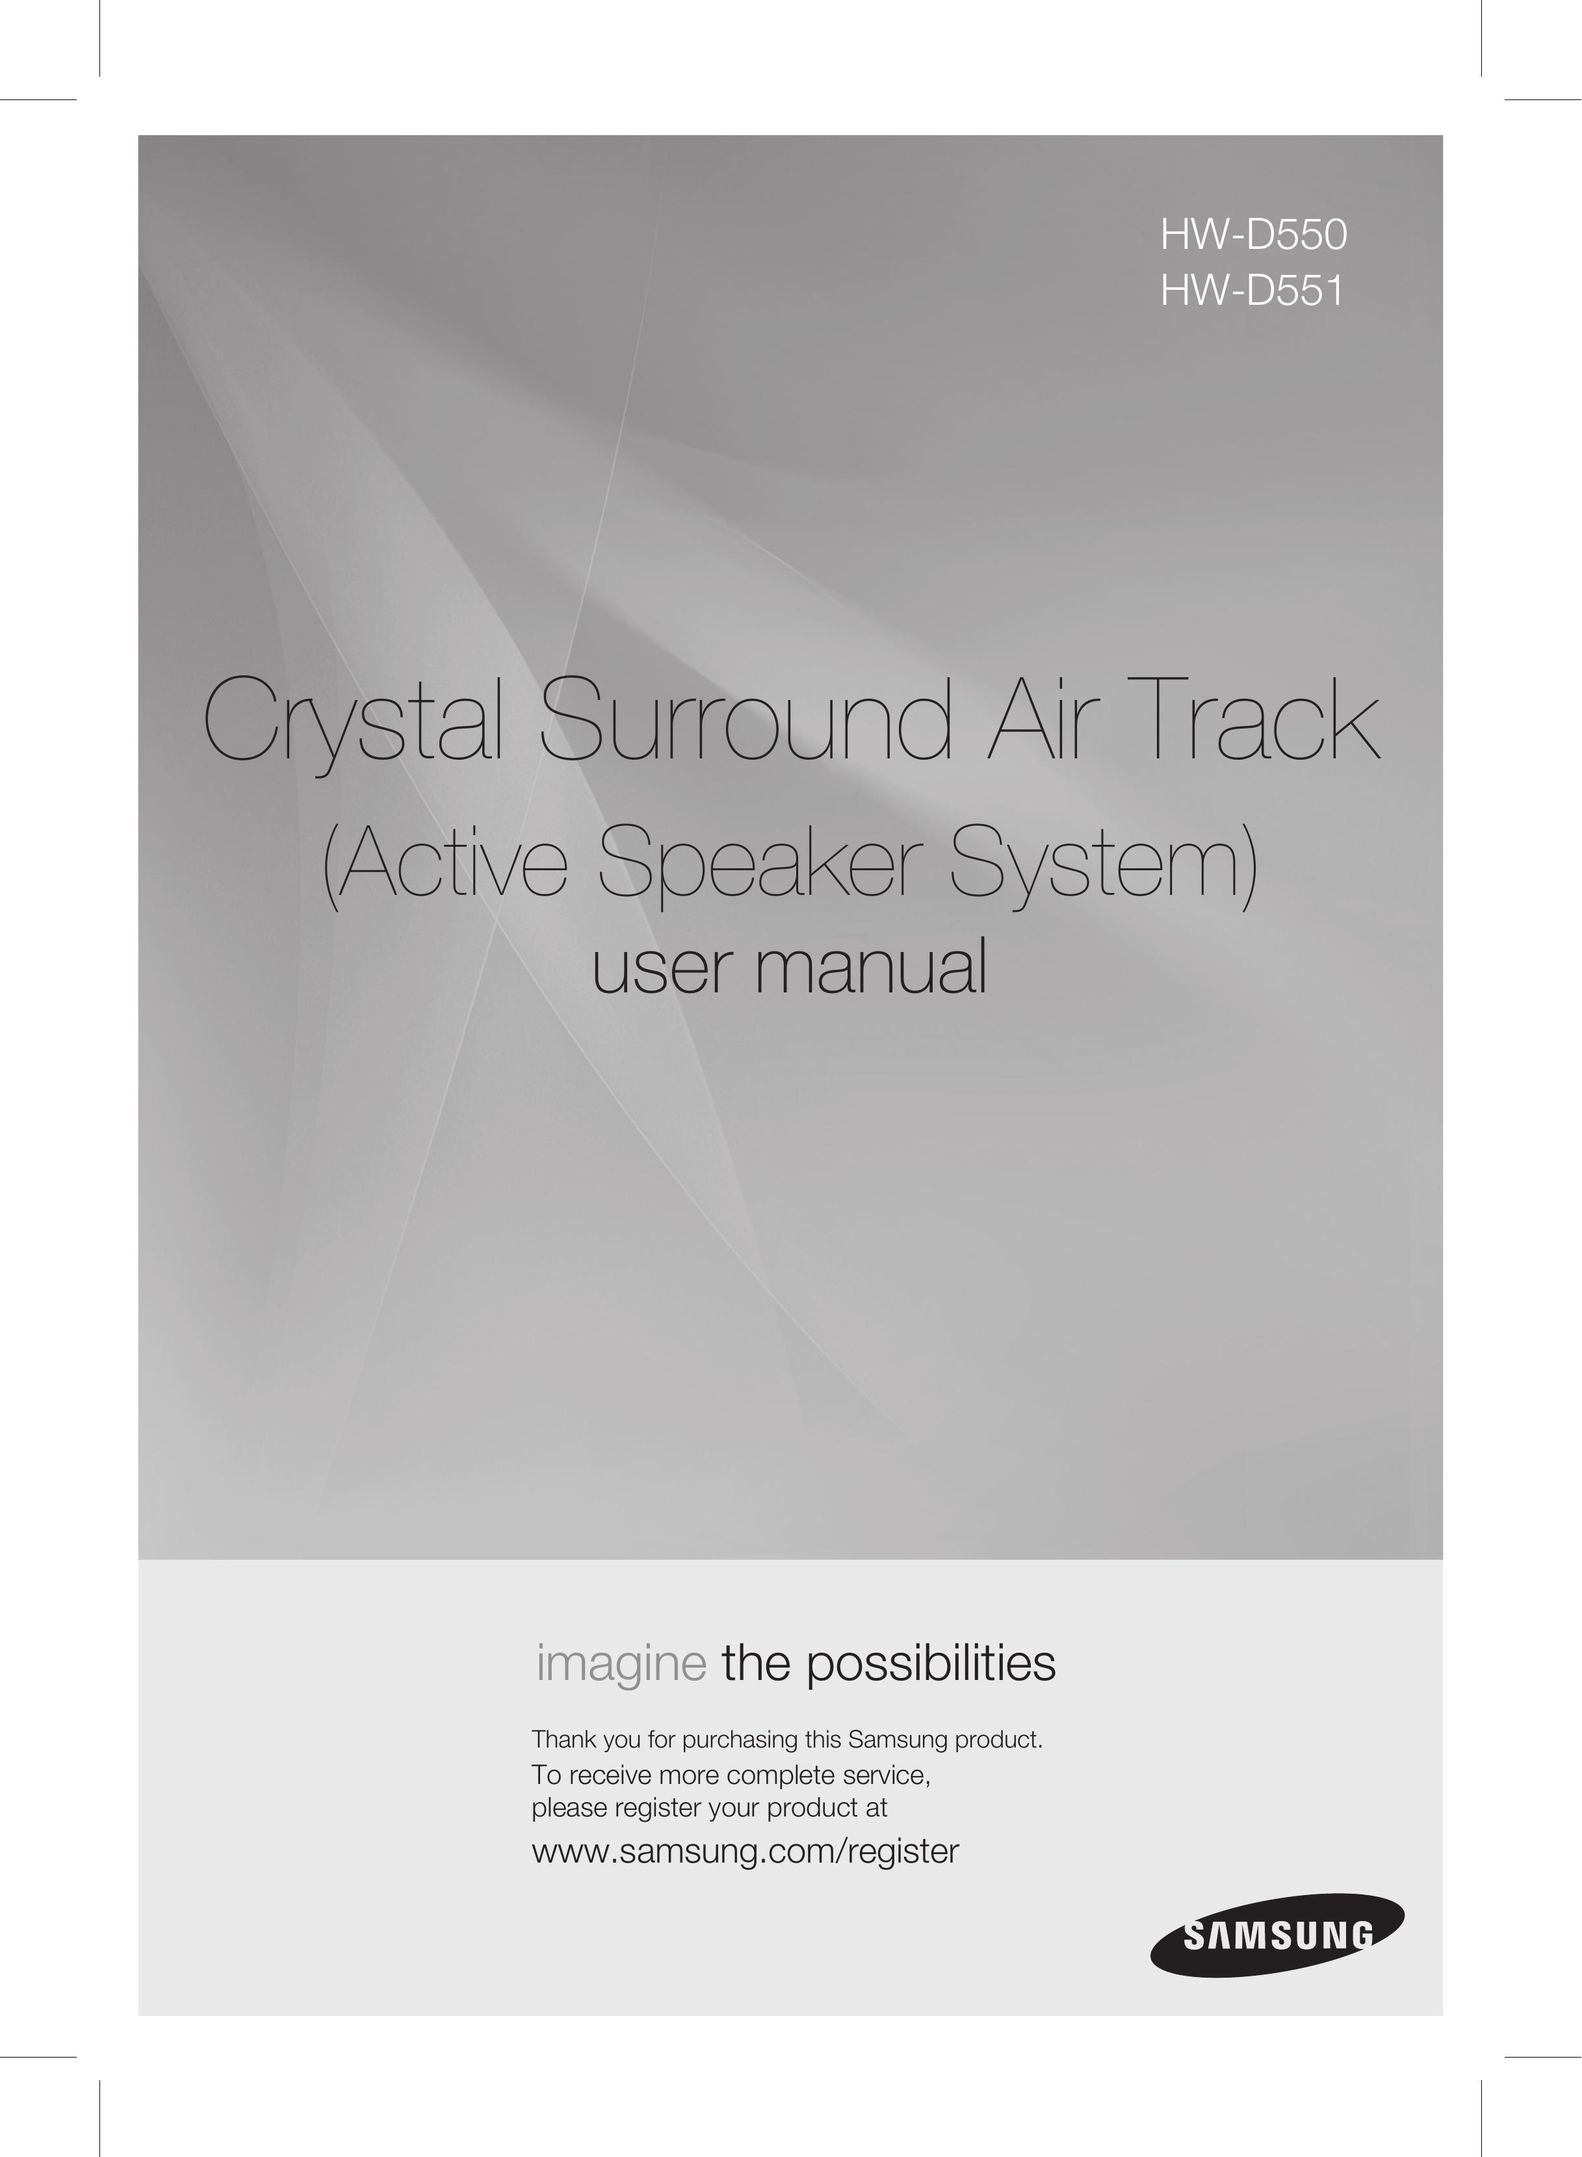 Samsung HW-D551 Speaker User Manual